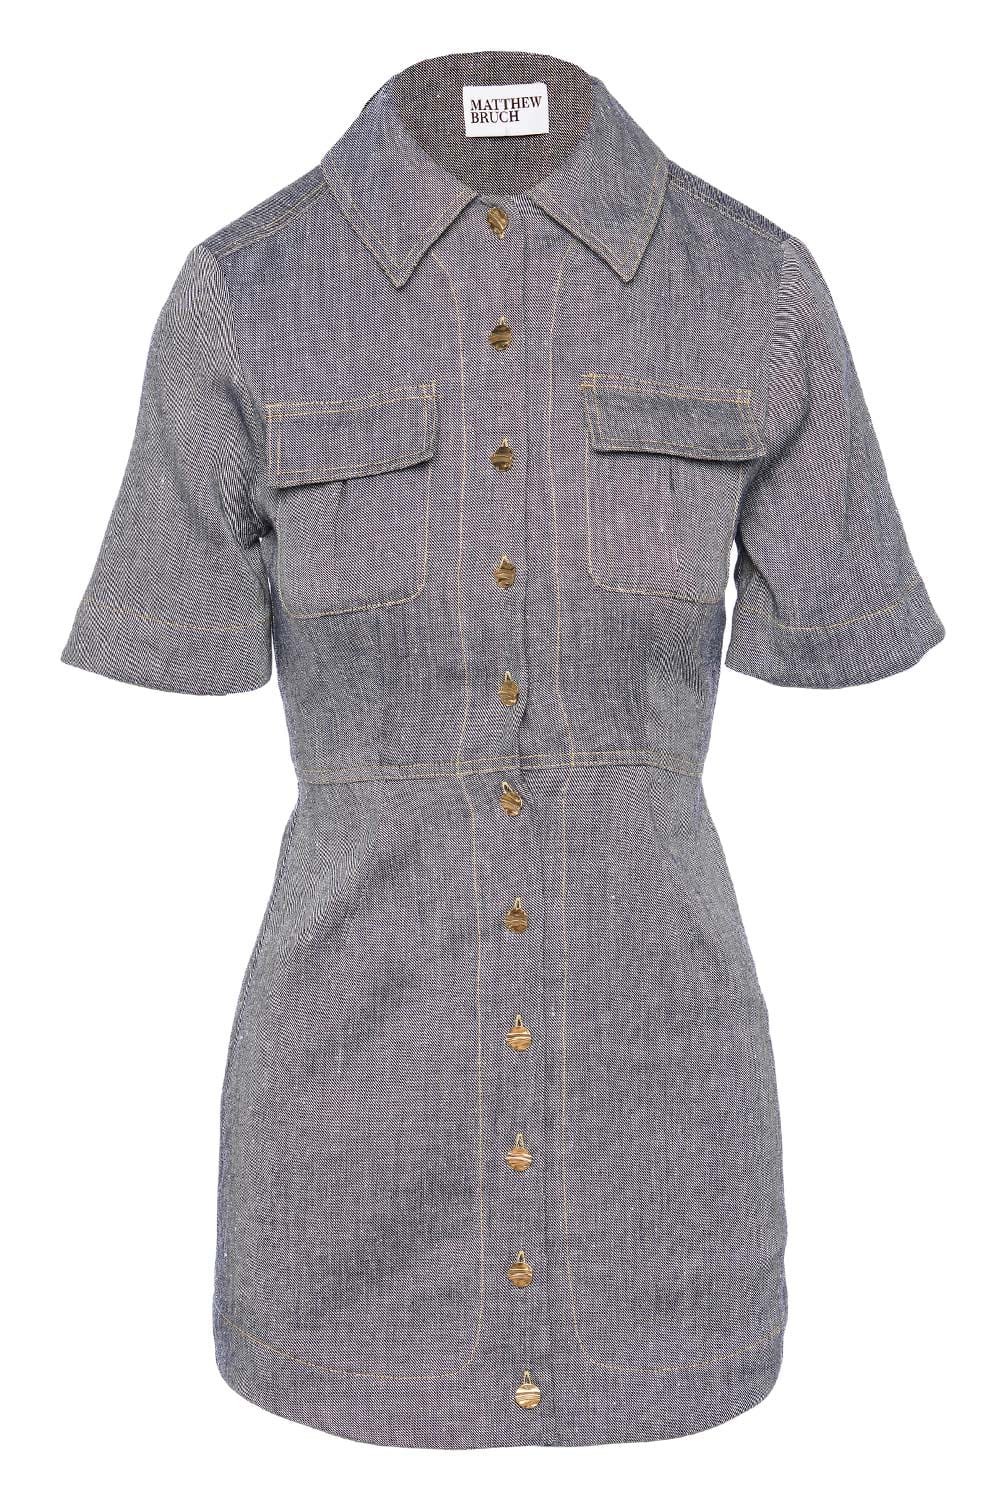 Matthew Bruch Cargo Button Up Mini Shirt Dress 24RES1083 D Denim